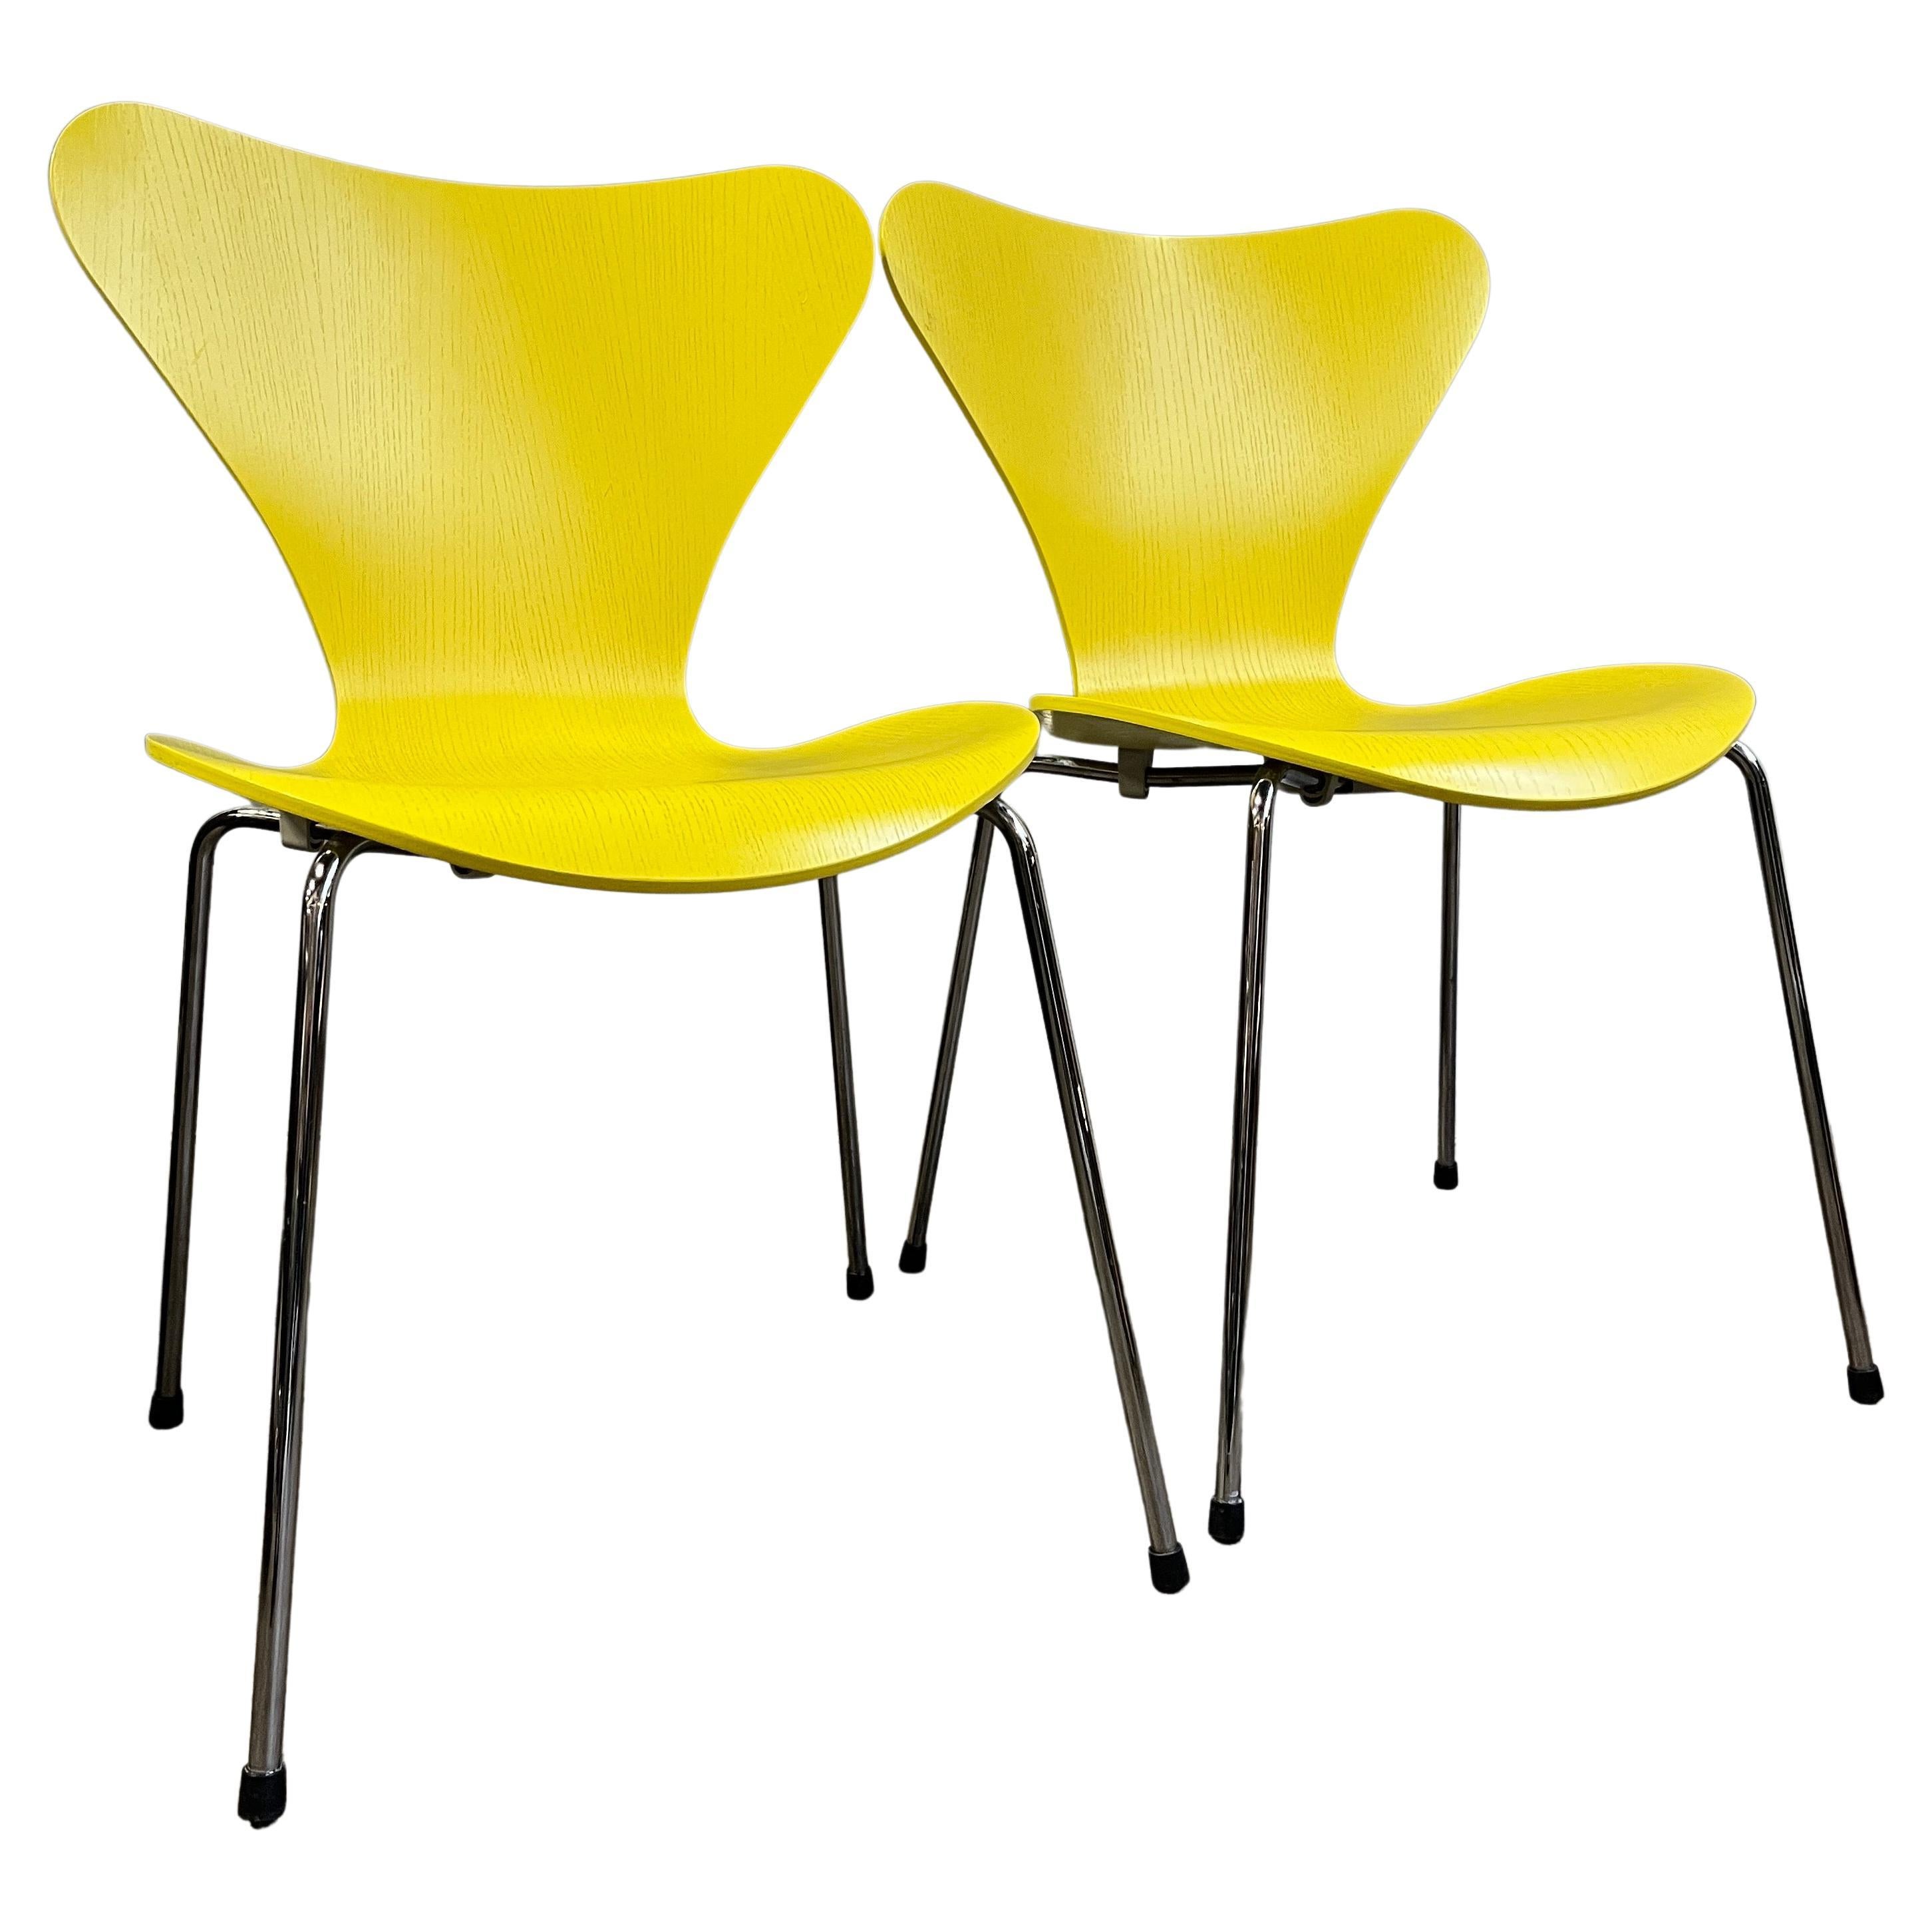 Paire de chaises jaunes Arne Jacobsen série 7 pour Fritz Hansen. Aucun signe d'usure. Ce modèle emblématique est l'une des chaises les plus réussies de cette époque. Incroyablement confortable et polyvalent.
 l'enlèvement local à Brooklyn, NY est